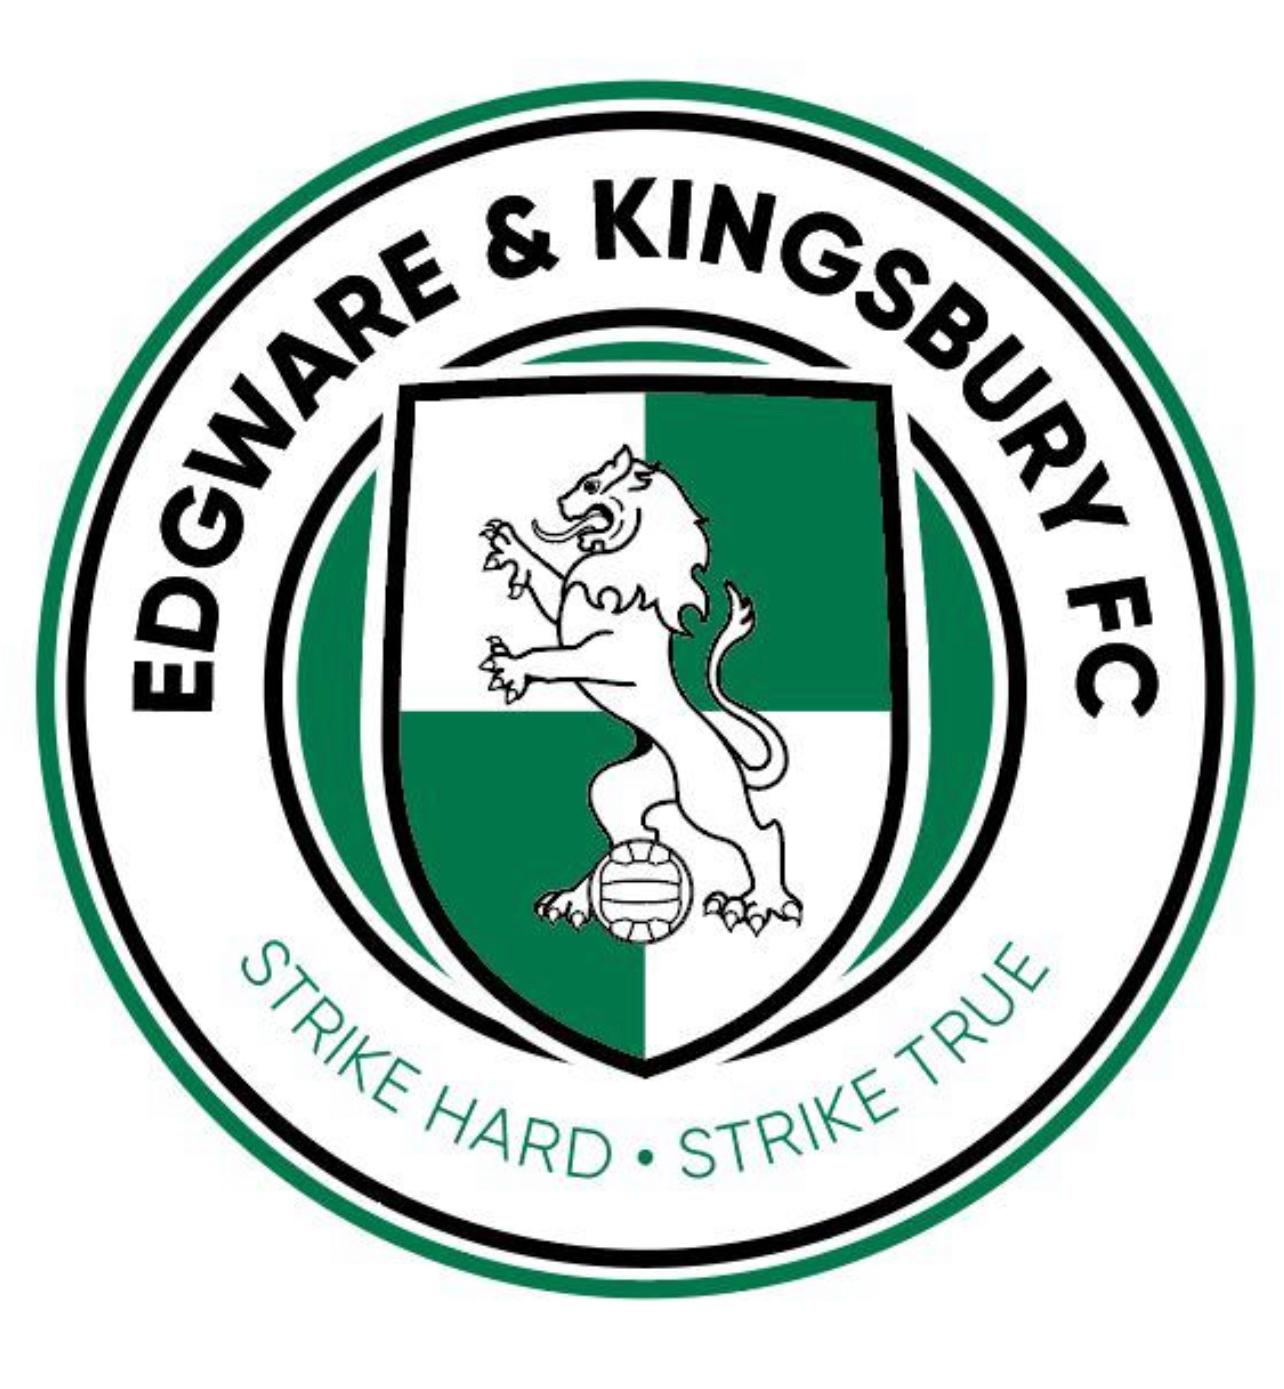 edgware-town-fc-21-football-club-facts